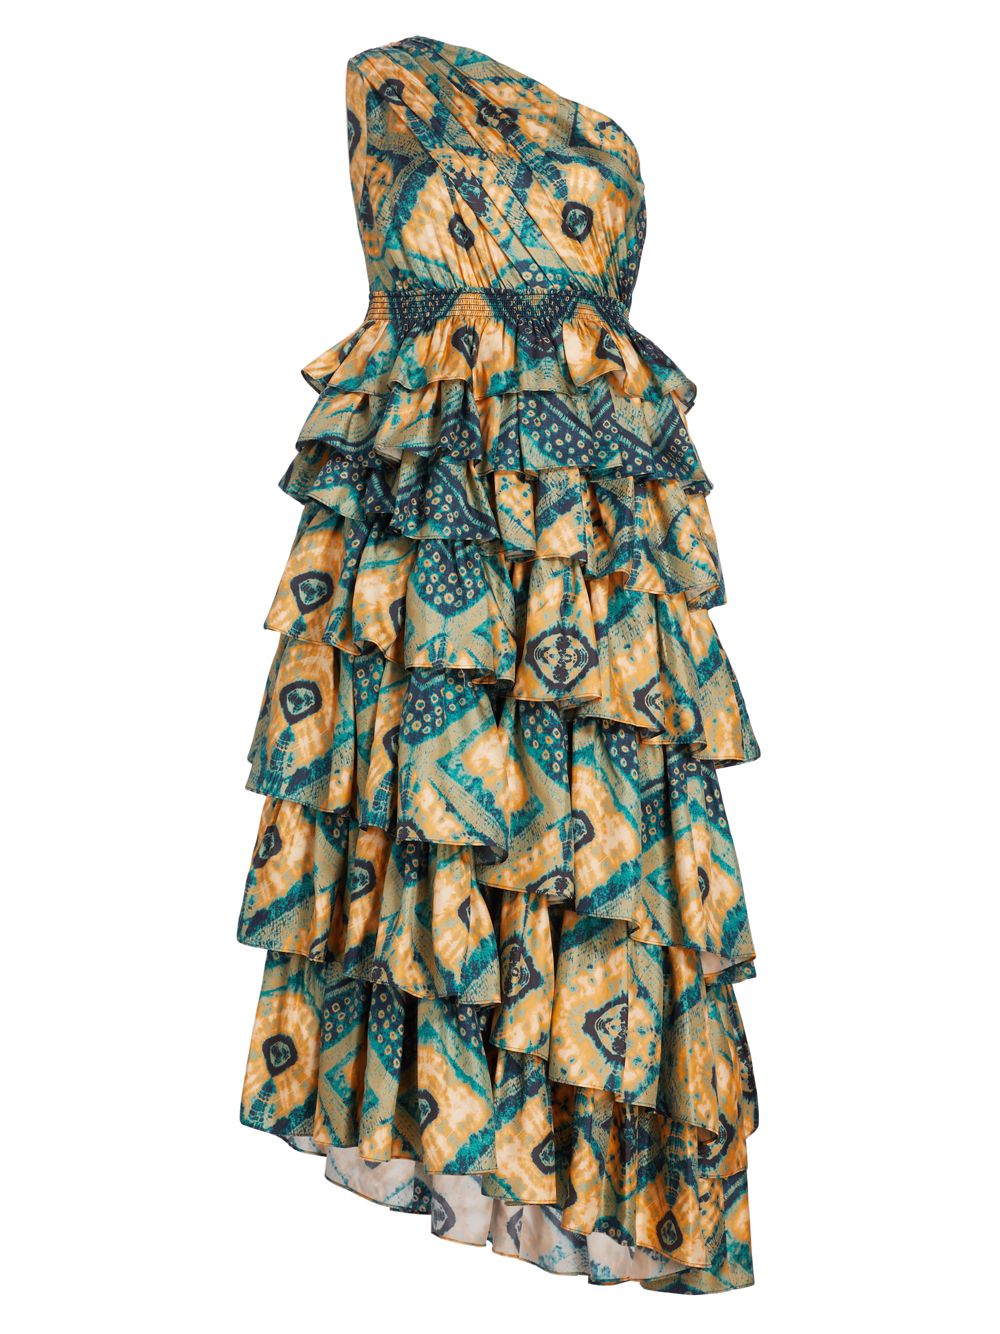 Ярусное шелковое платье Auryn на одно плечо Ulla Johnson 44819